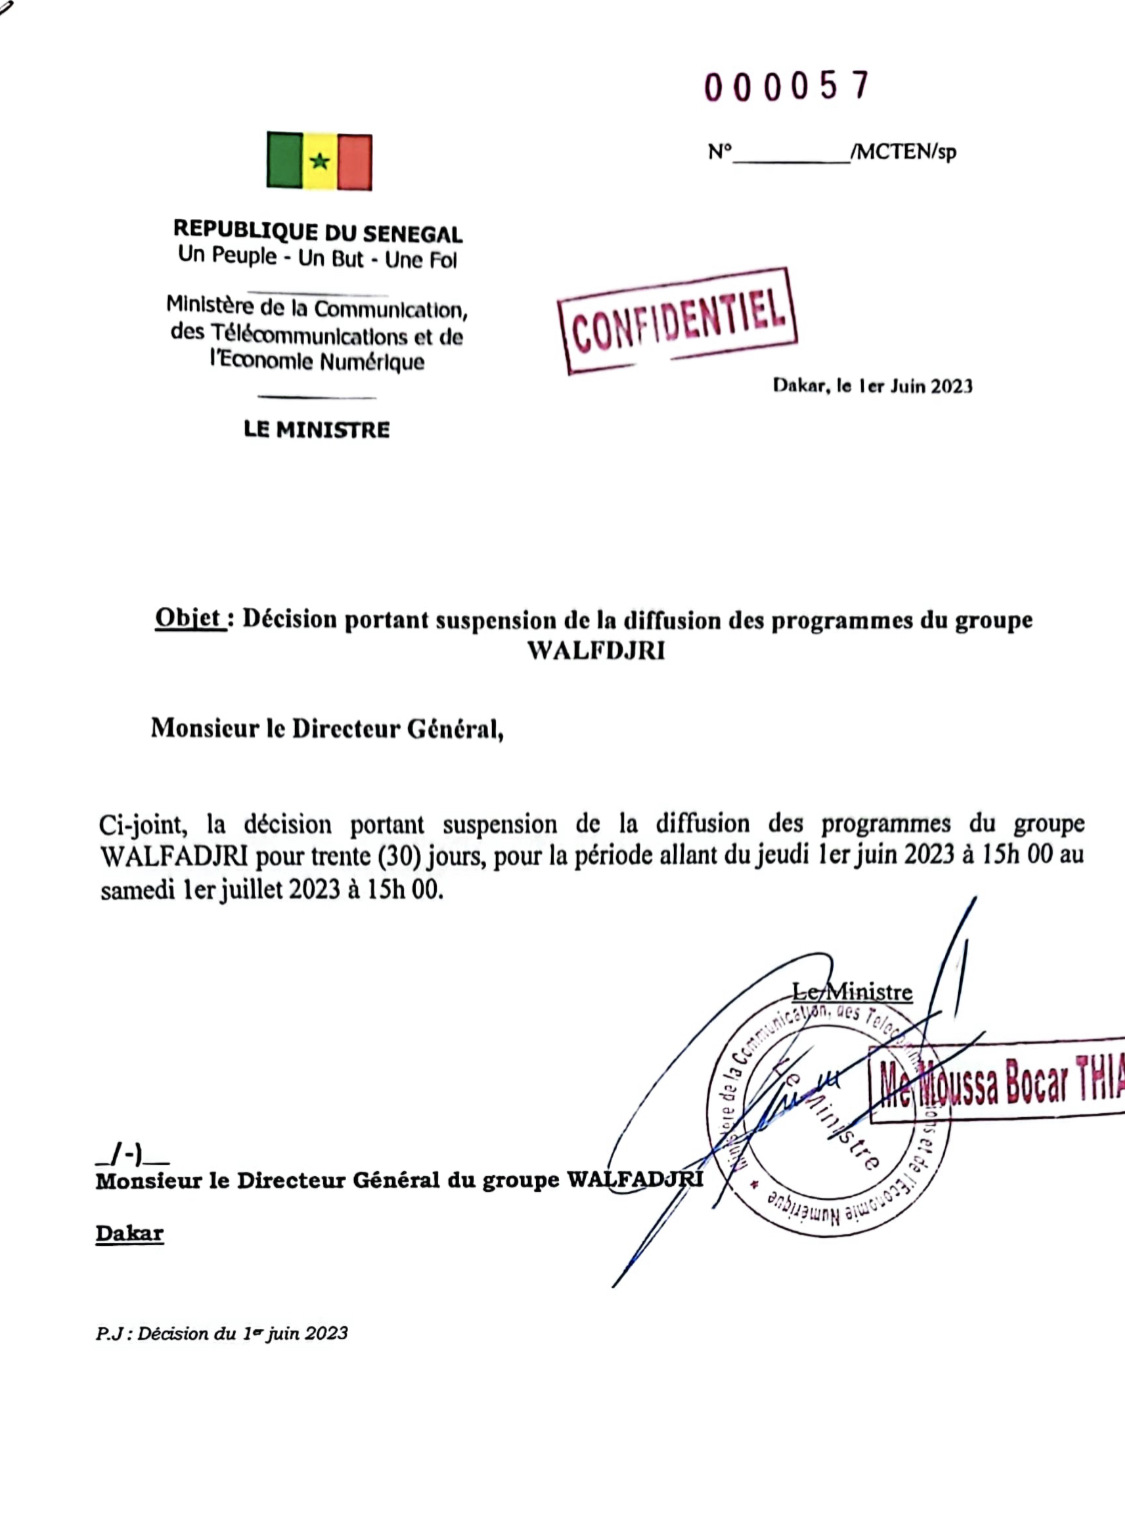 Le Groupe médiatique sénégalais Walfadjiri suspendu pour un mois par le ministre de la Communication